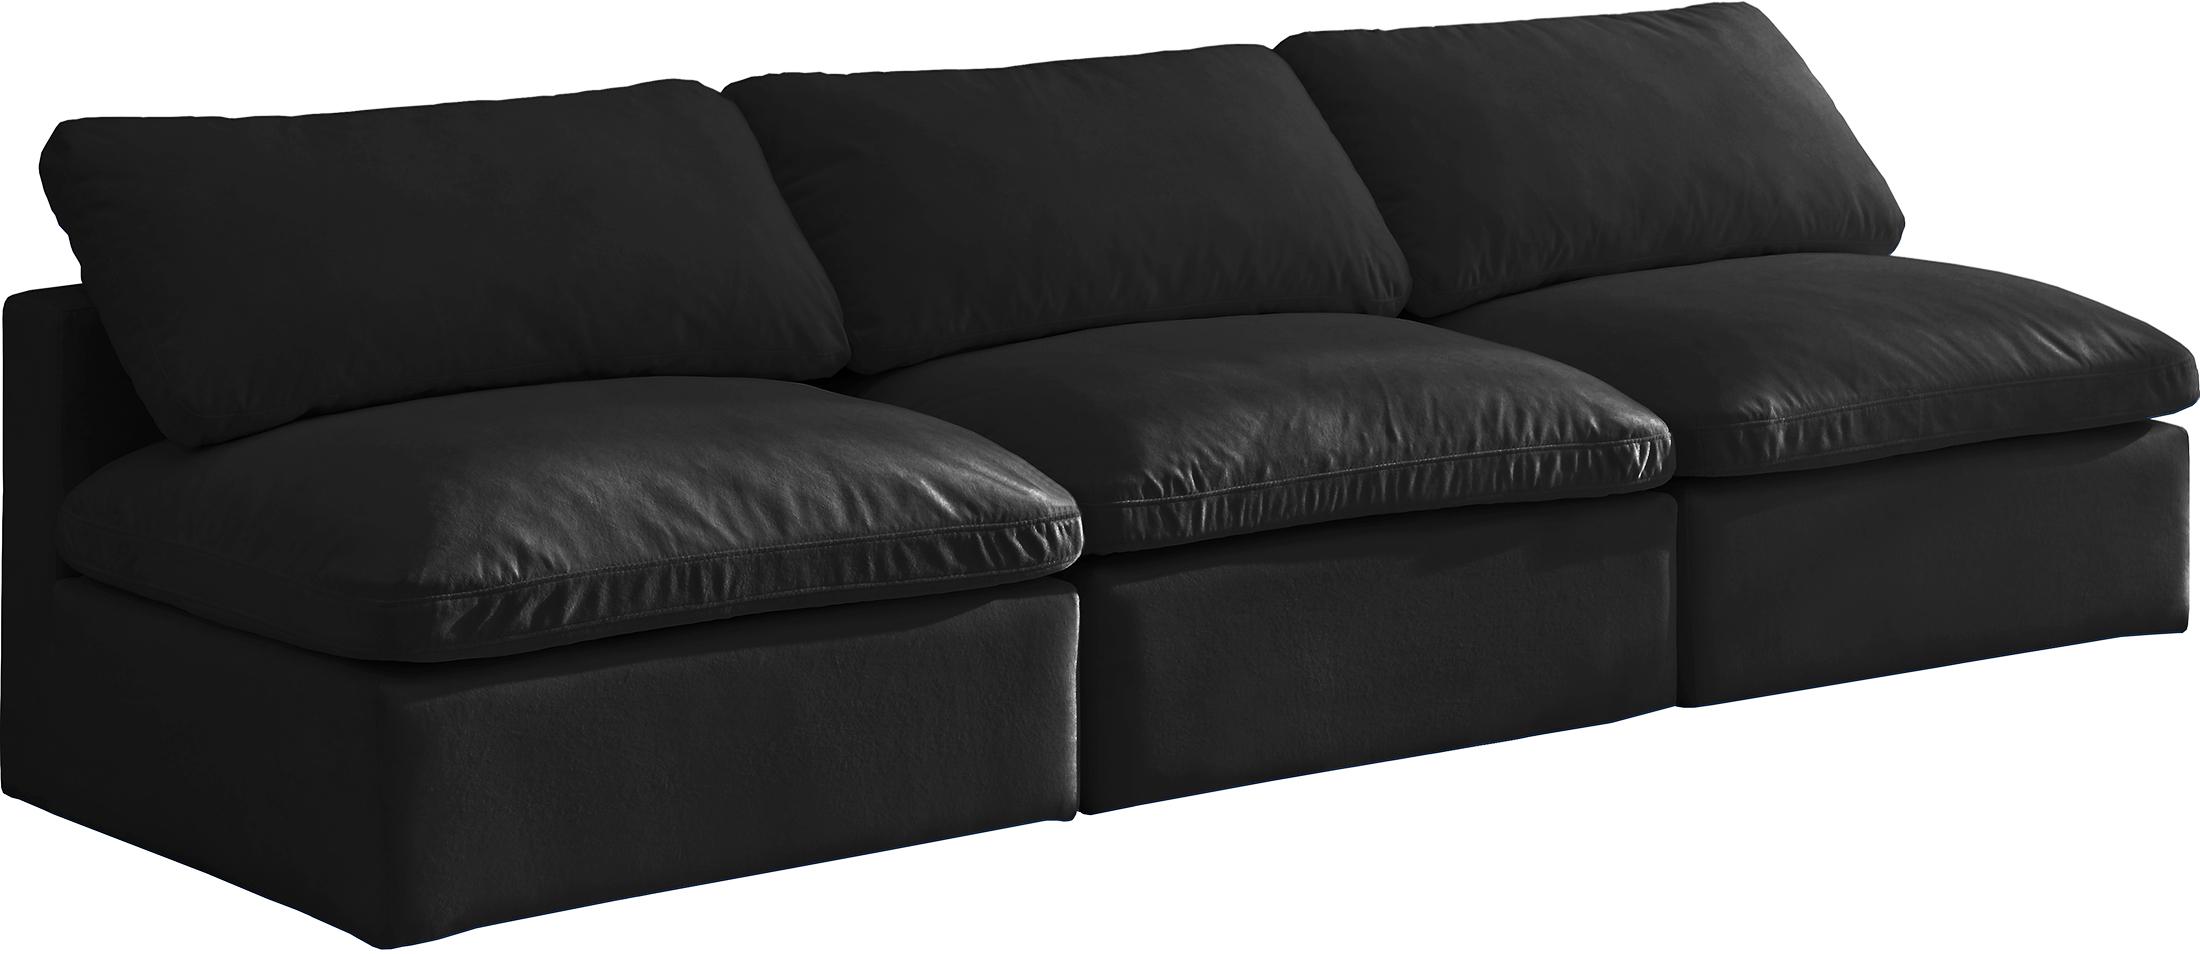 

    
BLACK Velvet Sofa Armless 105 Cloud Modular Overstuffed Down Filled SOFLEX Chic
